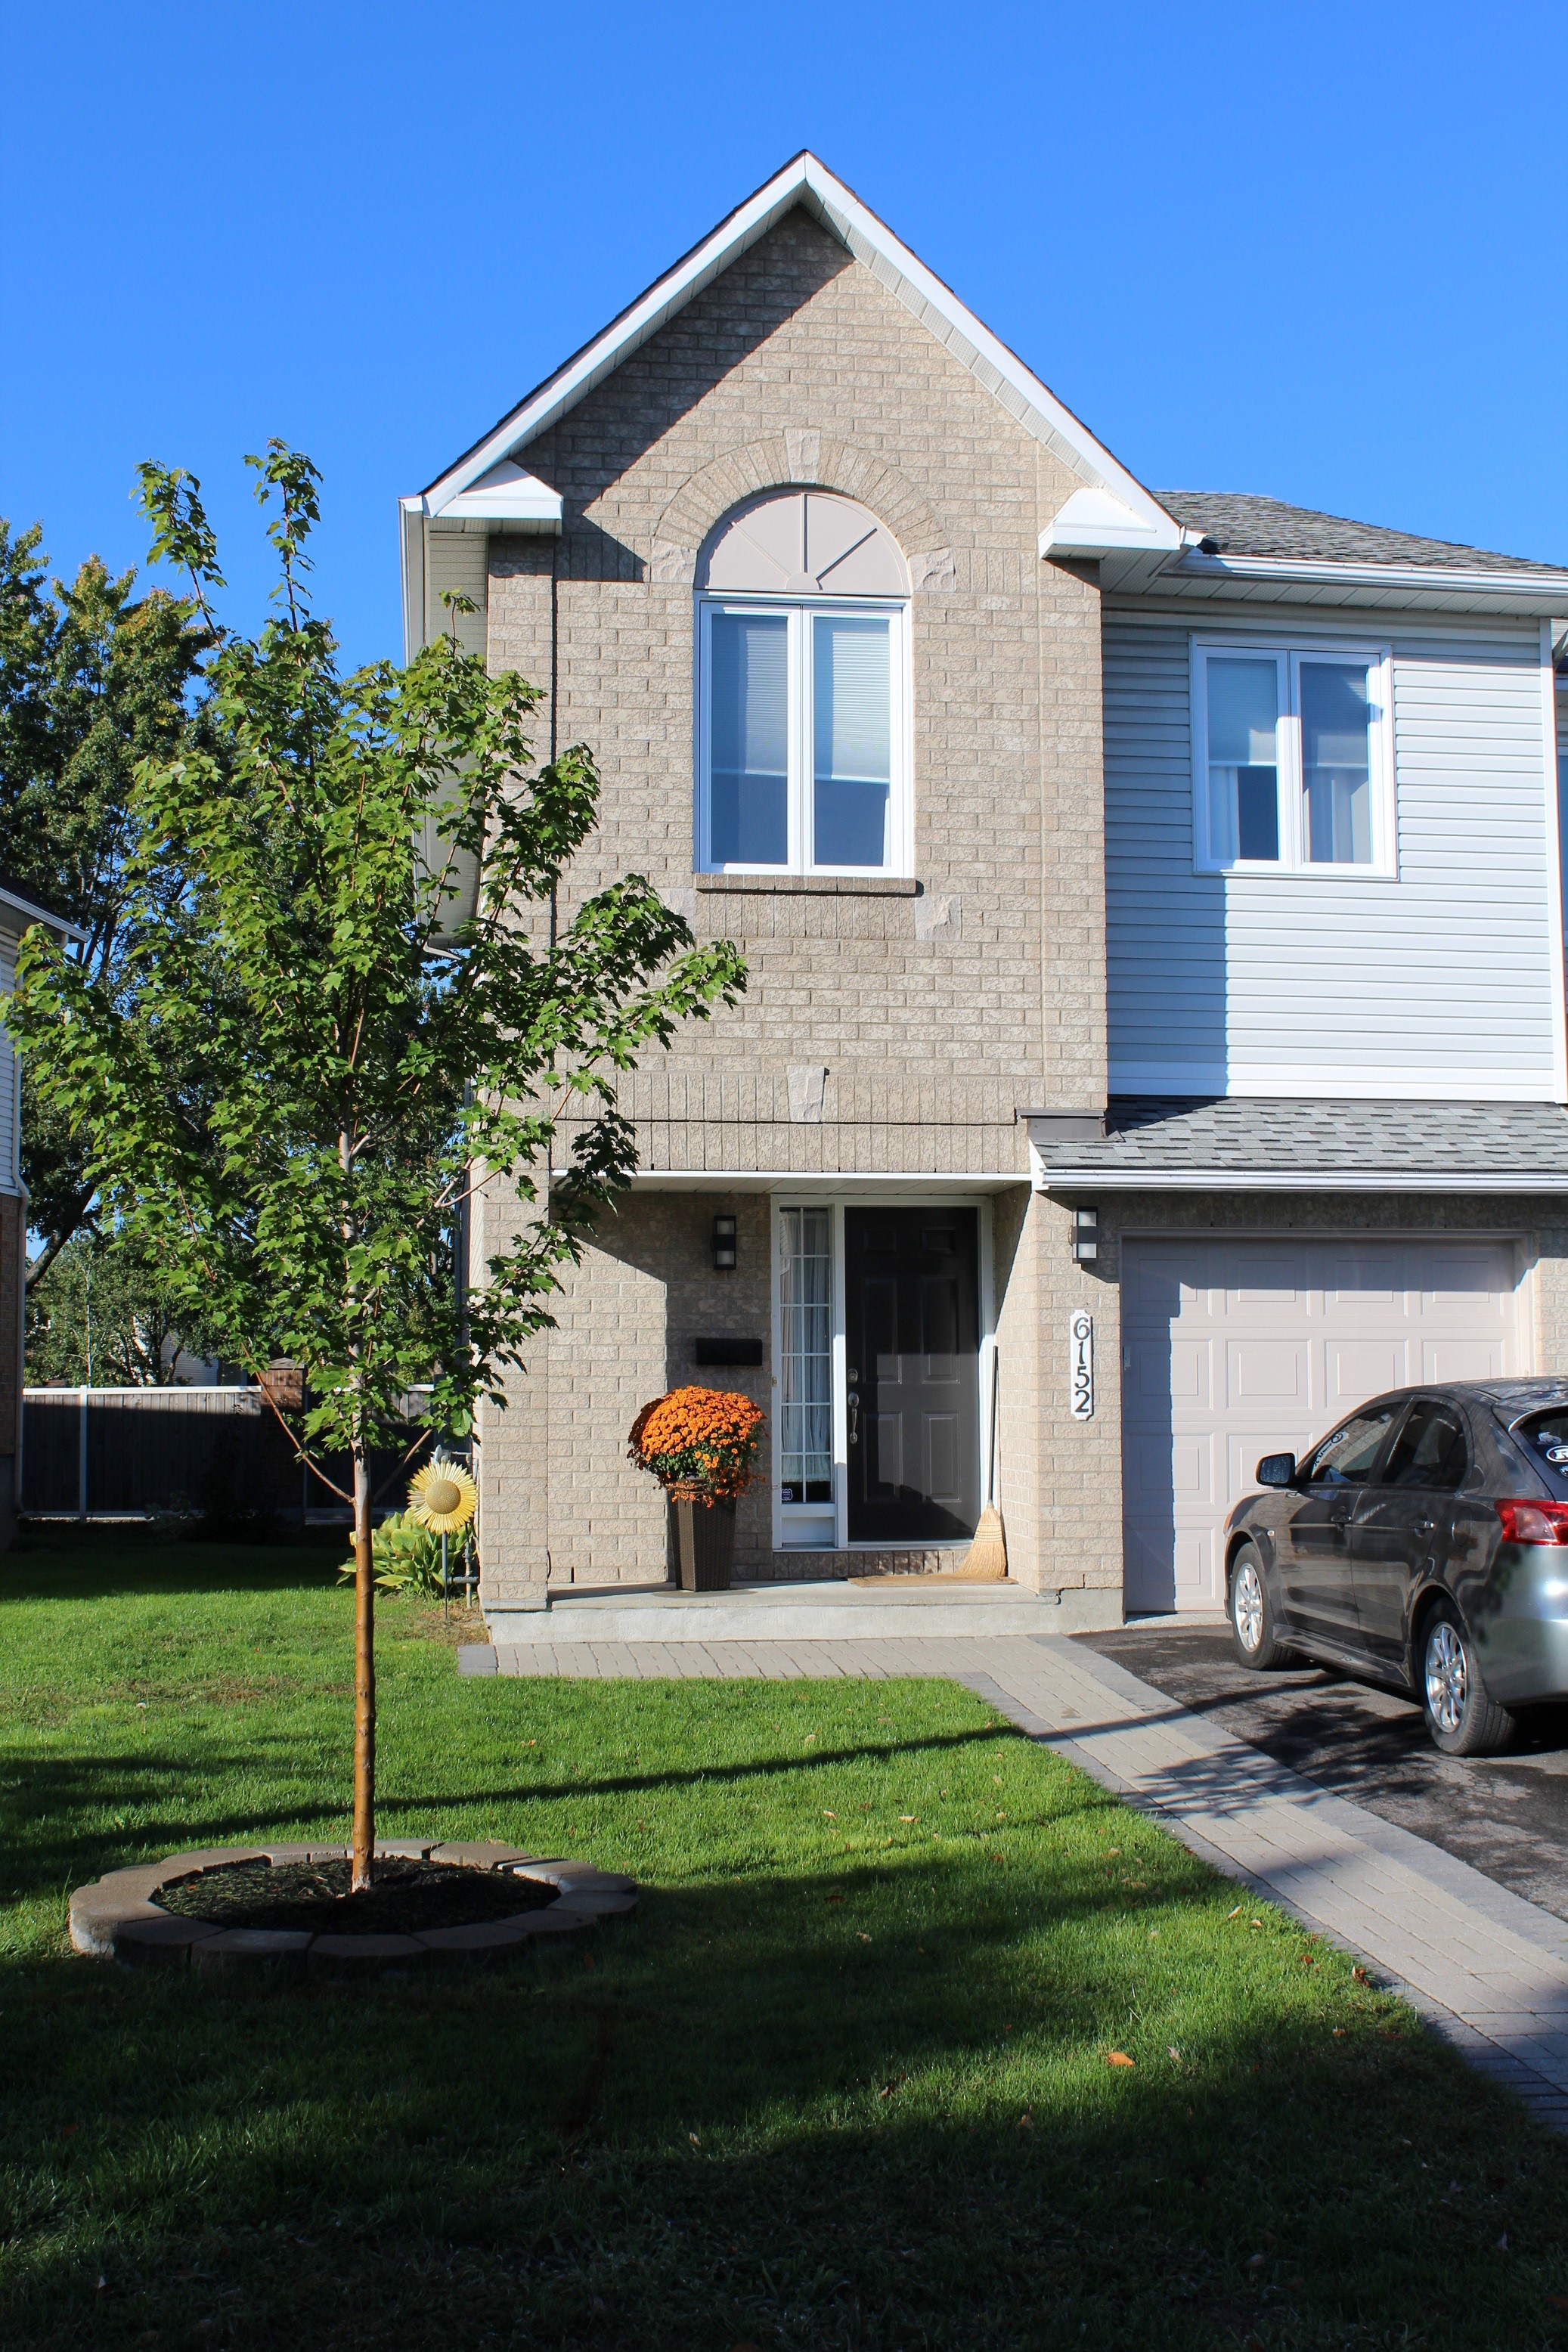 Ottawa Homes - SOLD!! - Ottawa Homes for Sale | BGM Real Estate